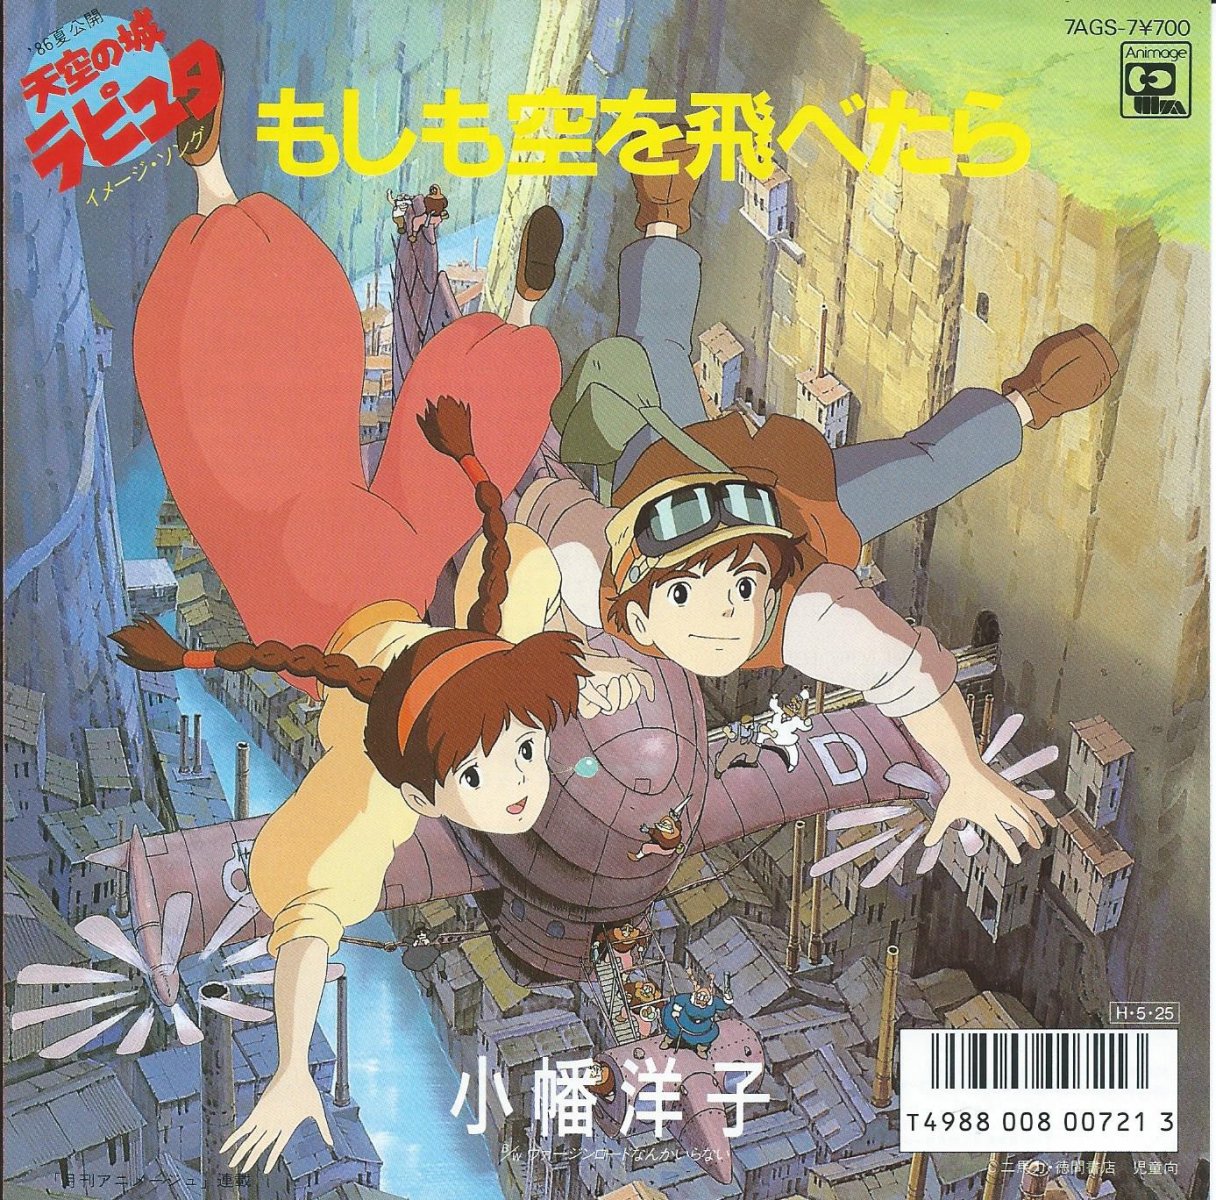 小幡洋子 もしも空を飛べたら 松本隆 筒美京平 天空の城ラピュタ イメージ ソング 7 Hip Tank Records